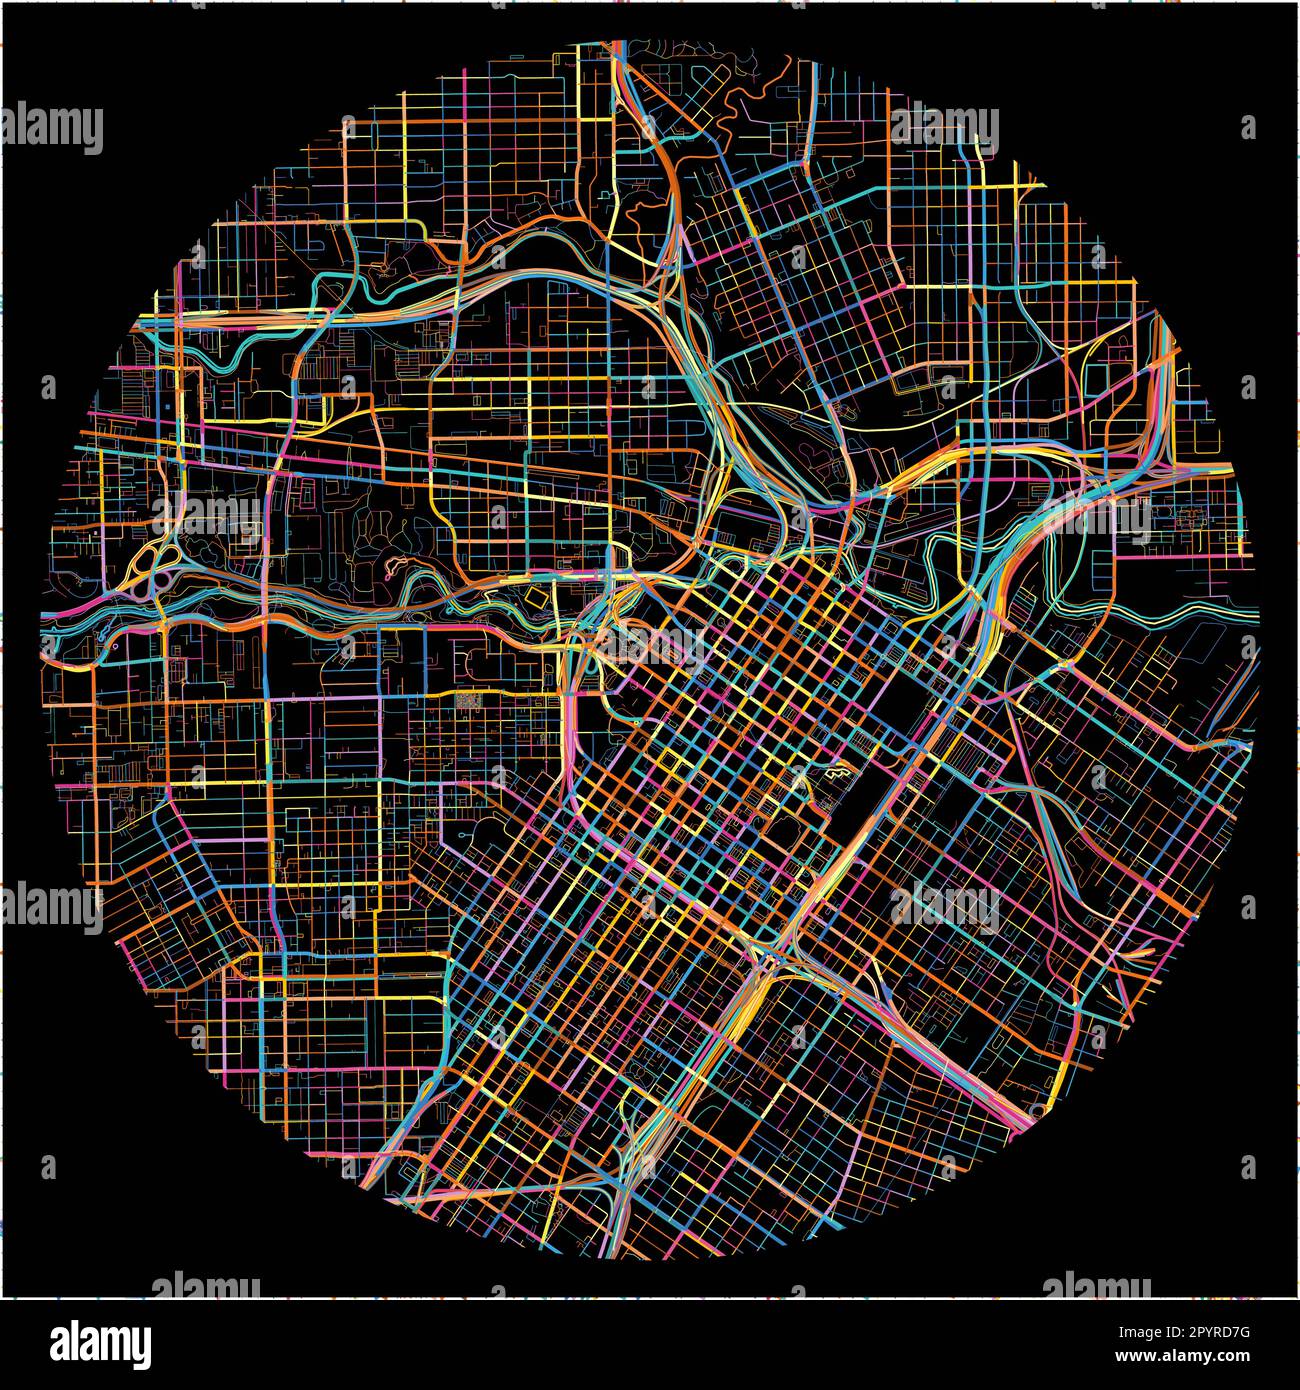 Mappa di Houston, Texas, con tutte le strade principali e minori, ferrovie e corsi d'acqua. Linee colorate su sfondo nero. Illustrazione Vettoriale